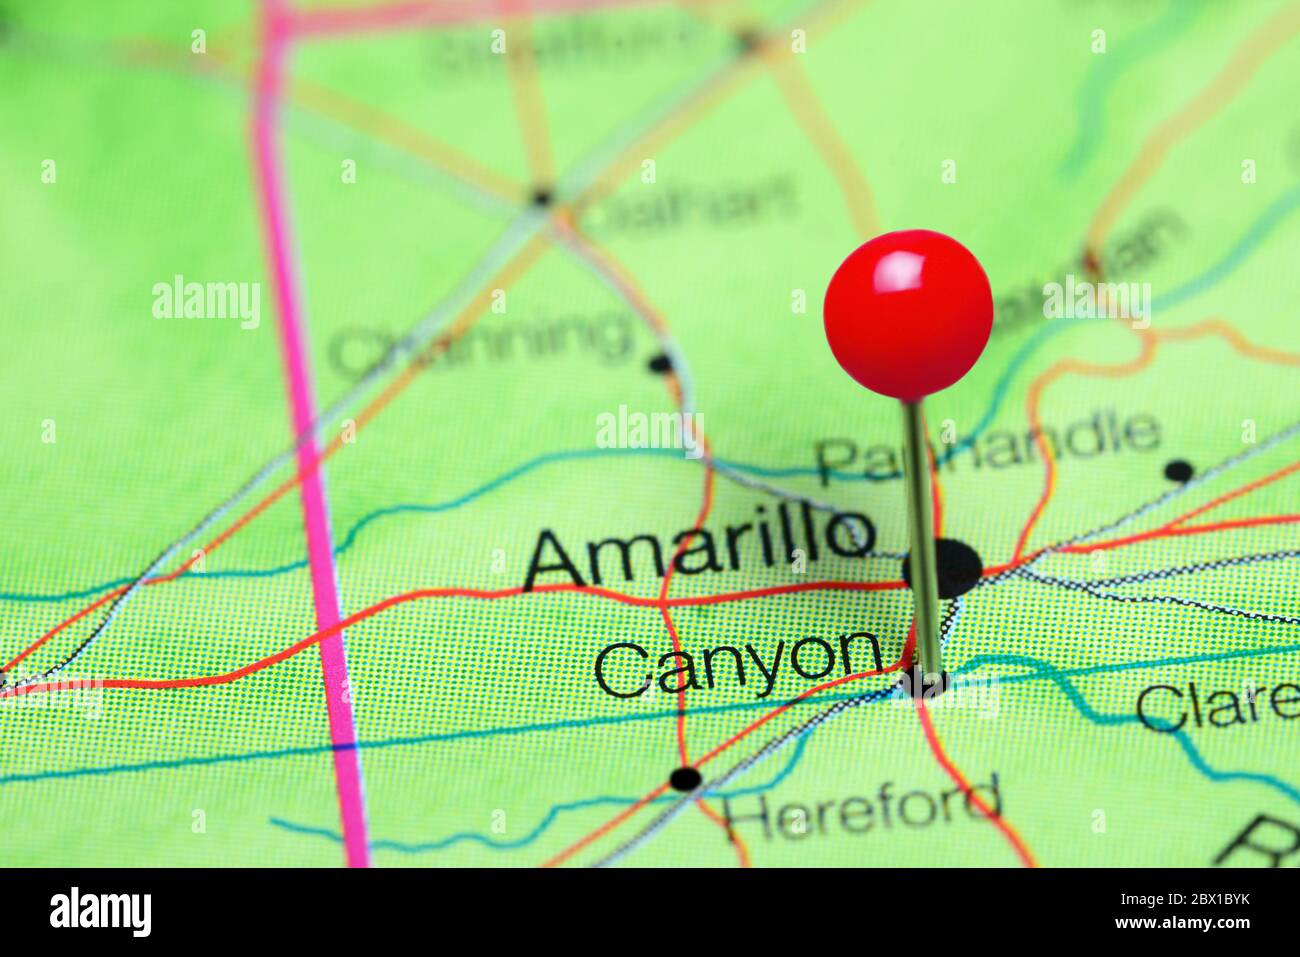 Canyon cubrió un mapa de Texas, Estados Unidos Foto de stock